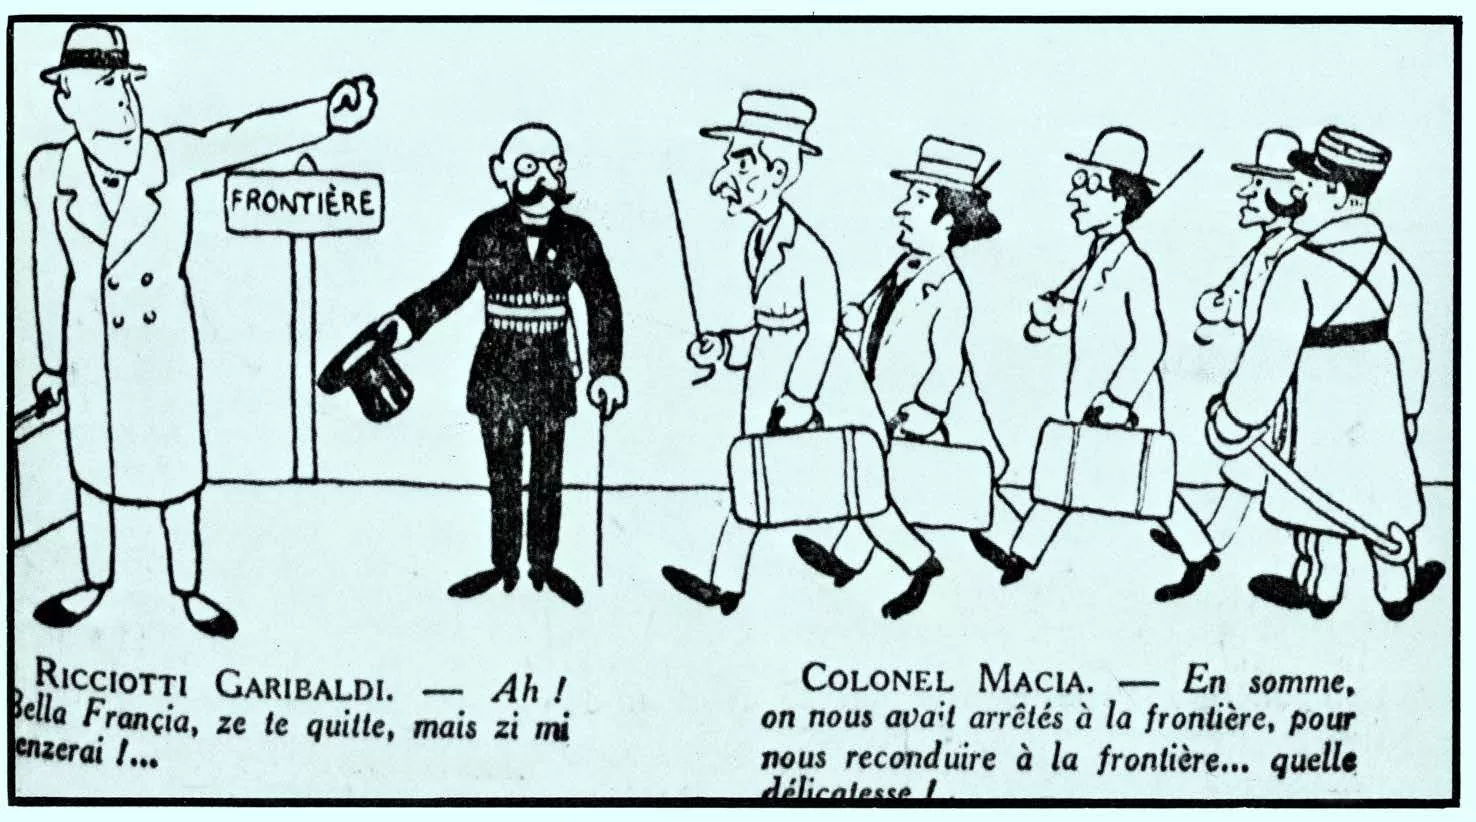 El judici a Macià va despertar una gran expectació: primeres planes, comentaris, fotografies... I també acudits que ironitzen sobre Macià i Garibaldi, com aquests, que van ser publicats a 'La Liberté' i 'Le Journal' el gener del 1927